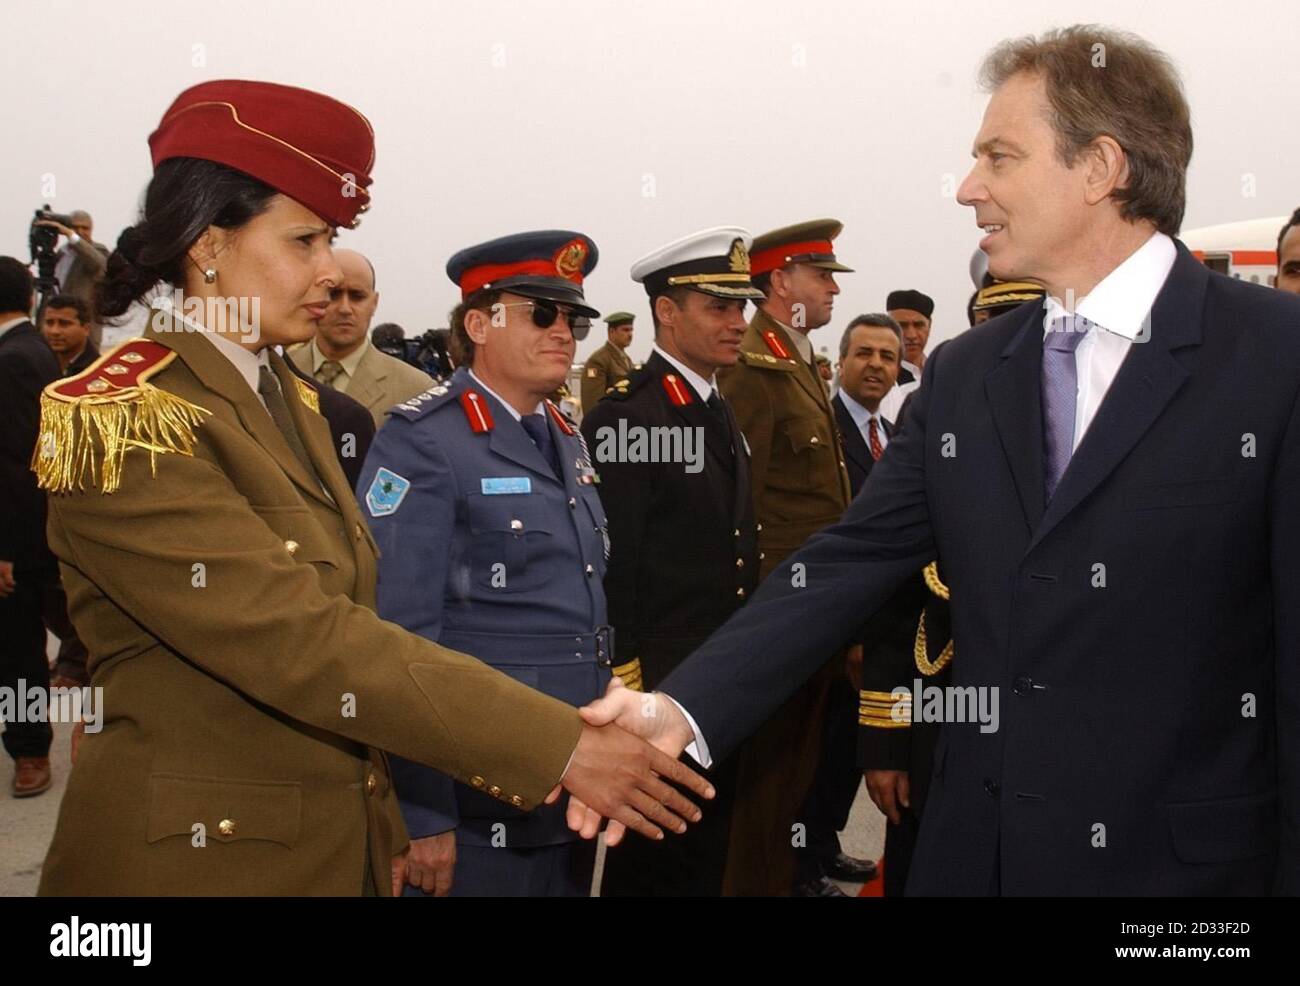 Premierminister Tony Blair (R) schüttelt die Hände mit Mitgliedern des libyschen Militärs, als er zu Gesprächen mit dem libyschen Führer Oberst Muammar Gaddafi vor ihren Gesprächen in Tripolis eintrifft. Stockfoto